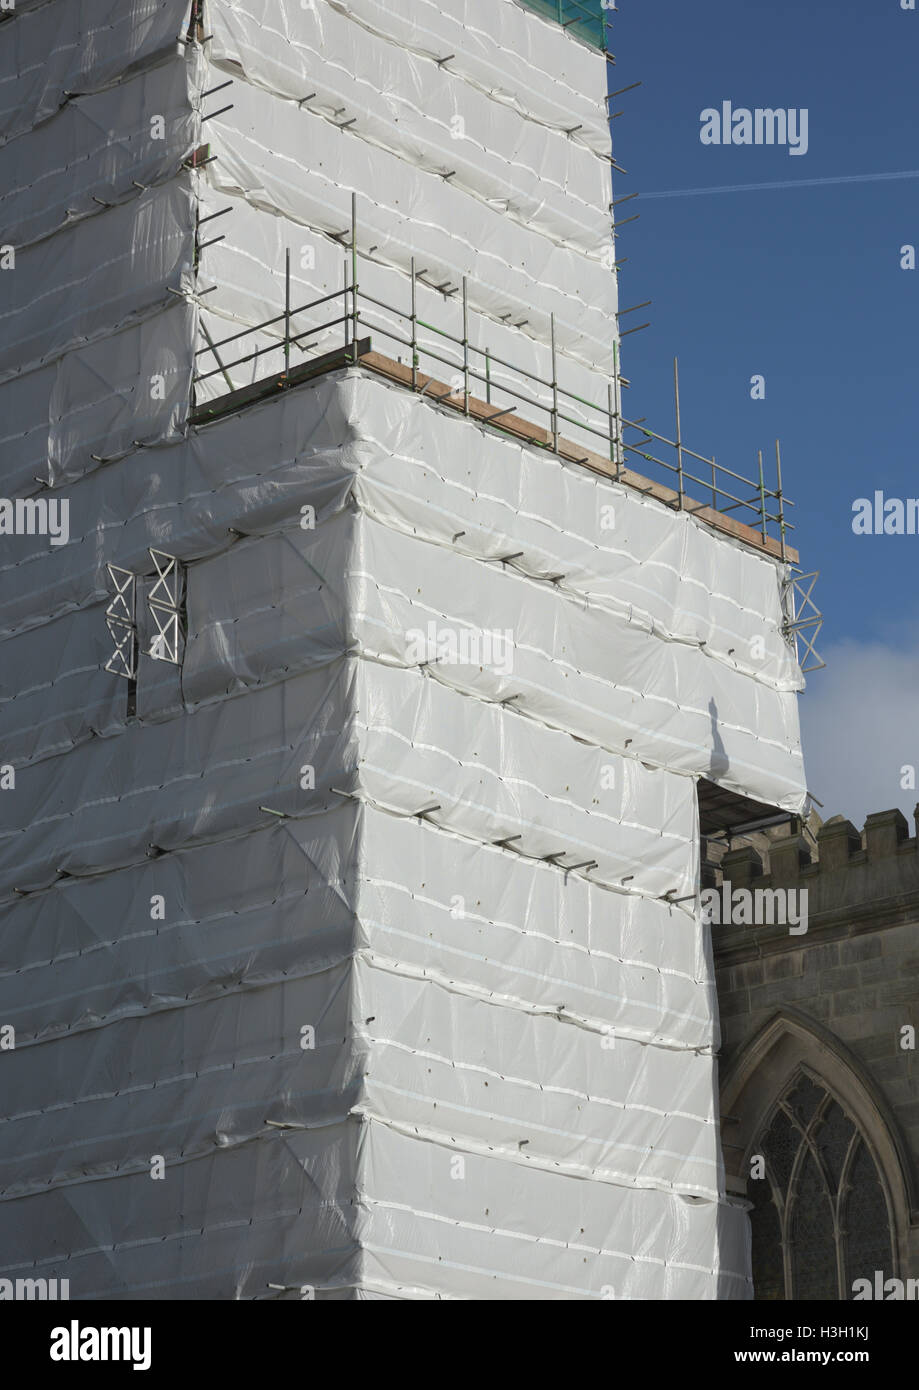 Sandstrahlen Auffangvorhänge schützen die Umwelt vor Gefahren in der Luft  während Renovierung aller Heiligen Kirche stehen whitefield Bury uk  Stockfotografie - Alamy